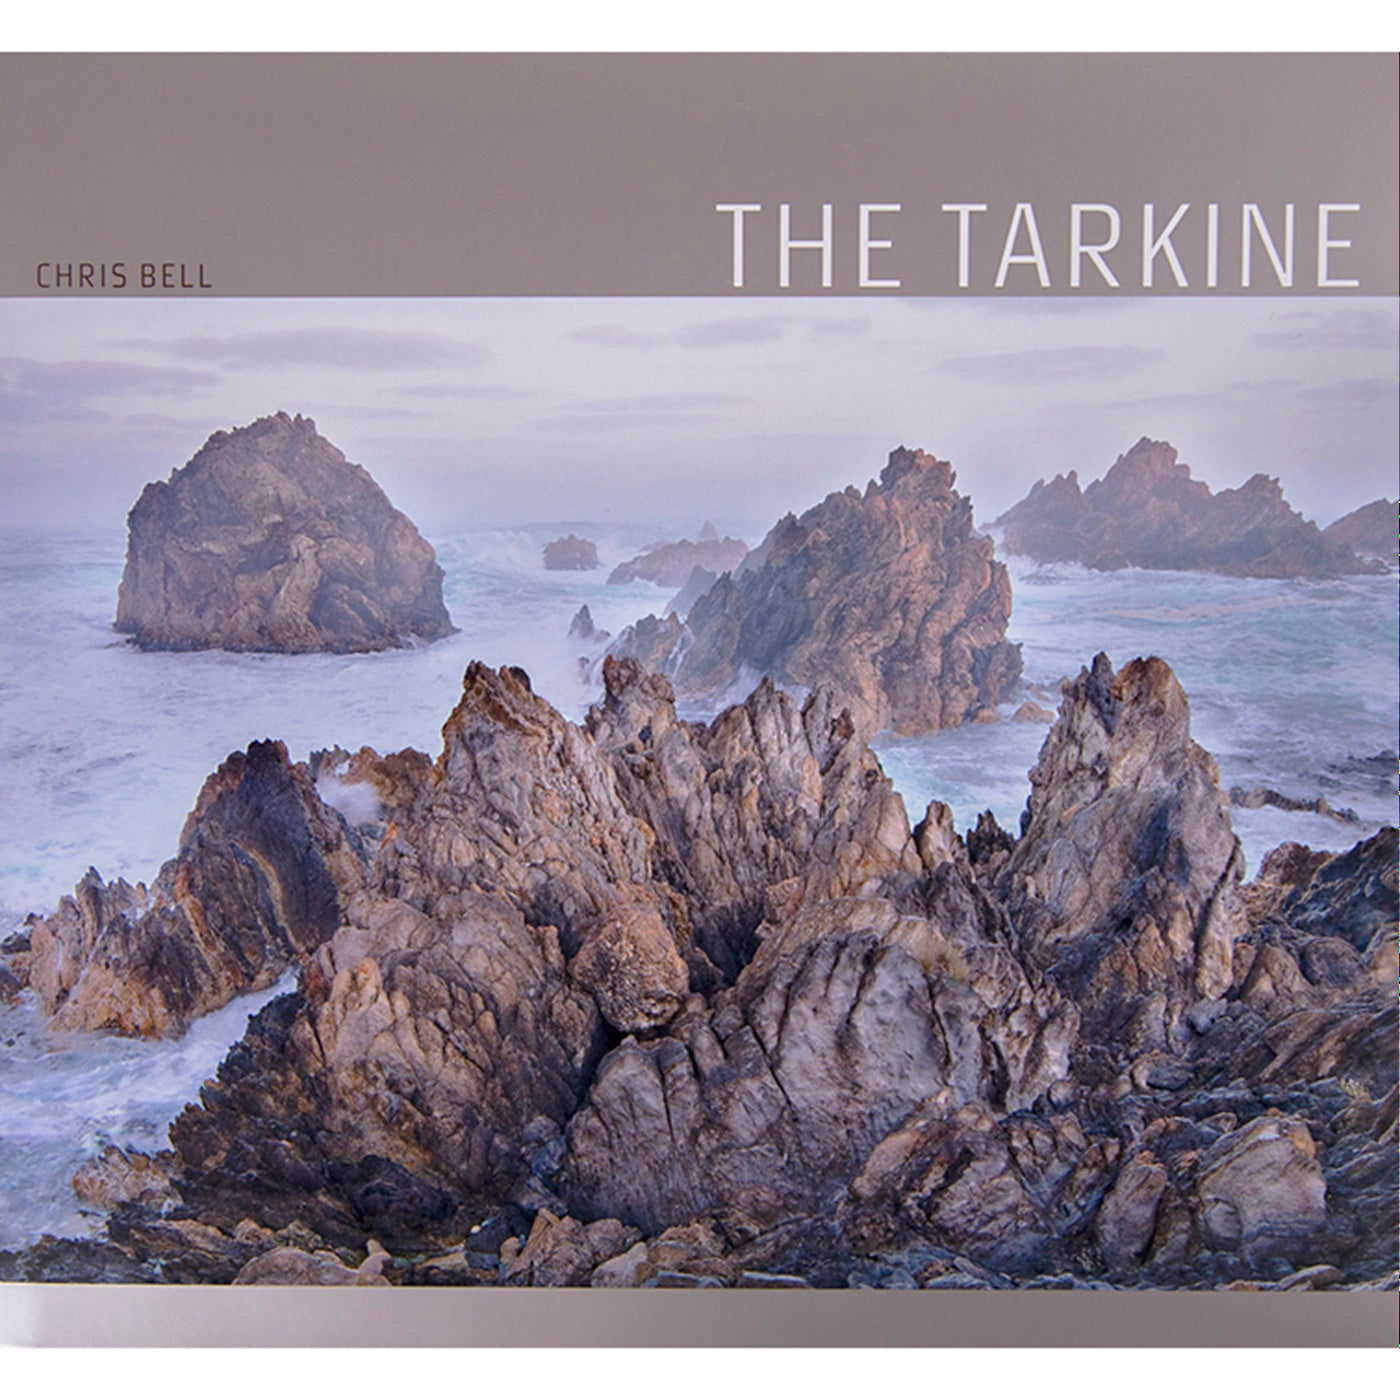 The Tarkine